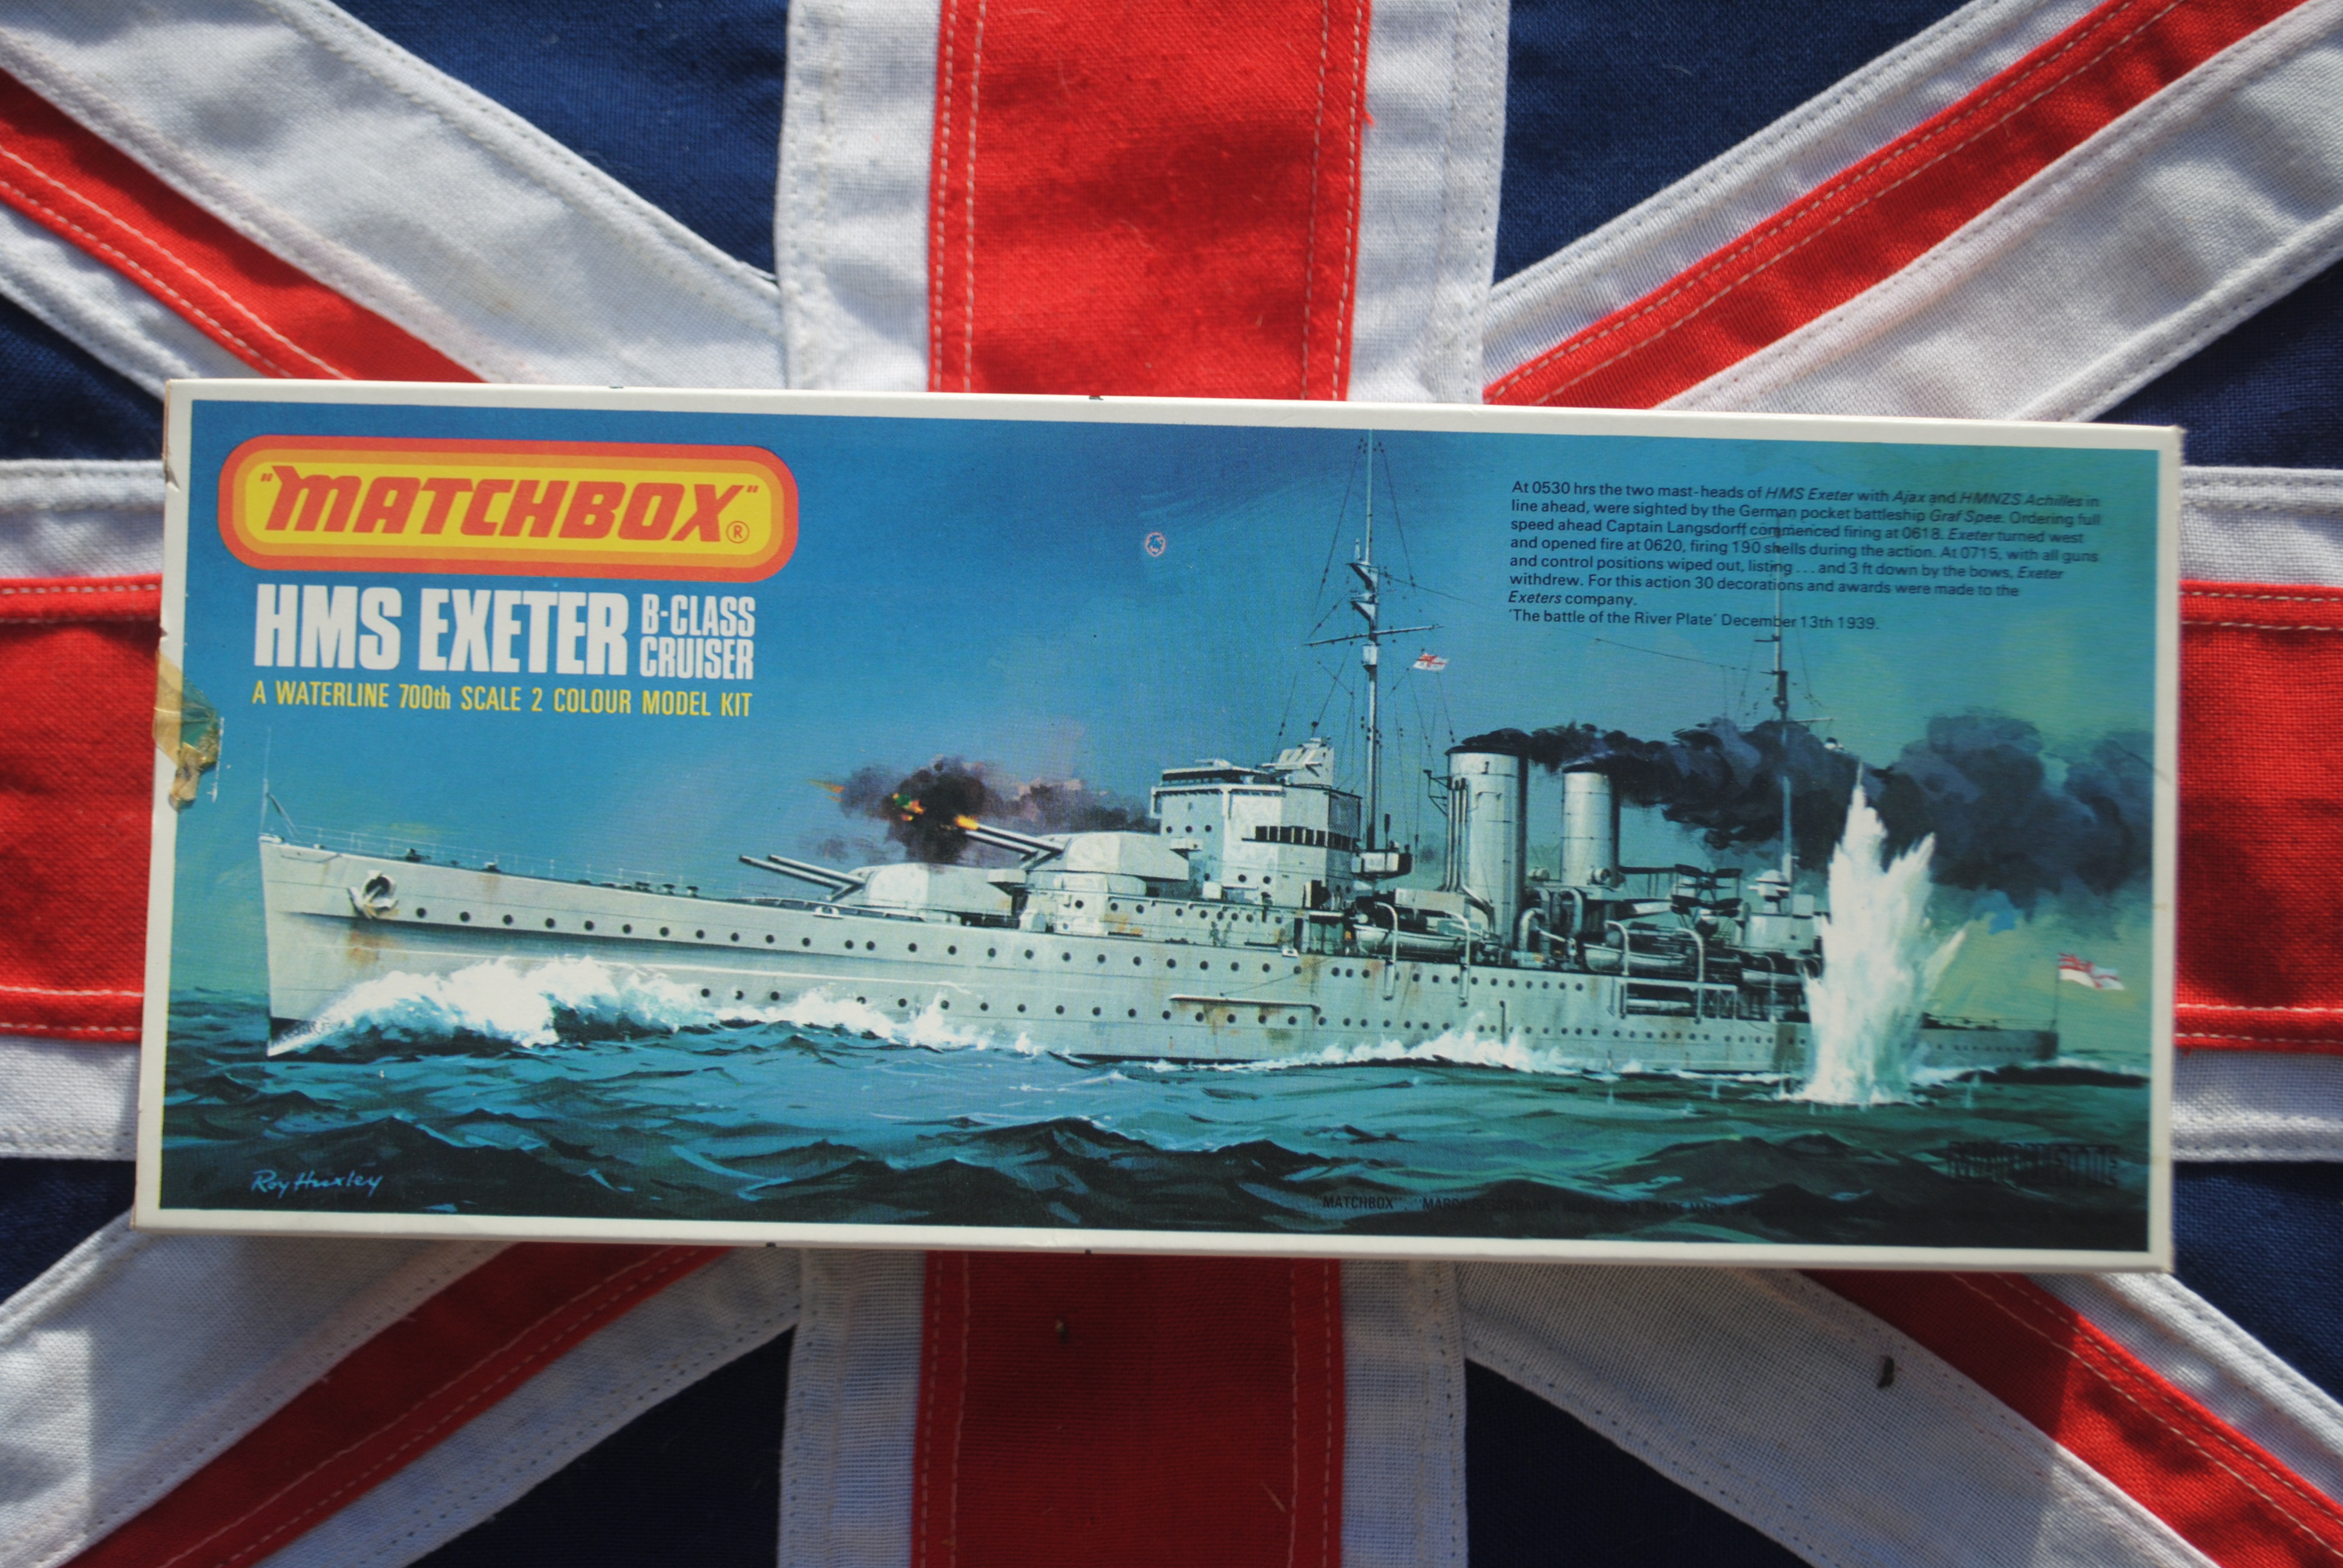 Matchbox PK-162 HMS Exeter B-Class Cruiser